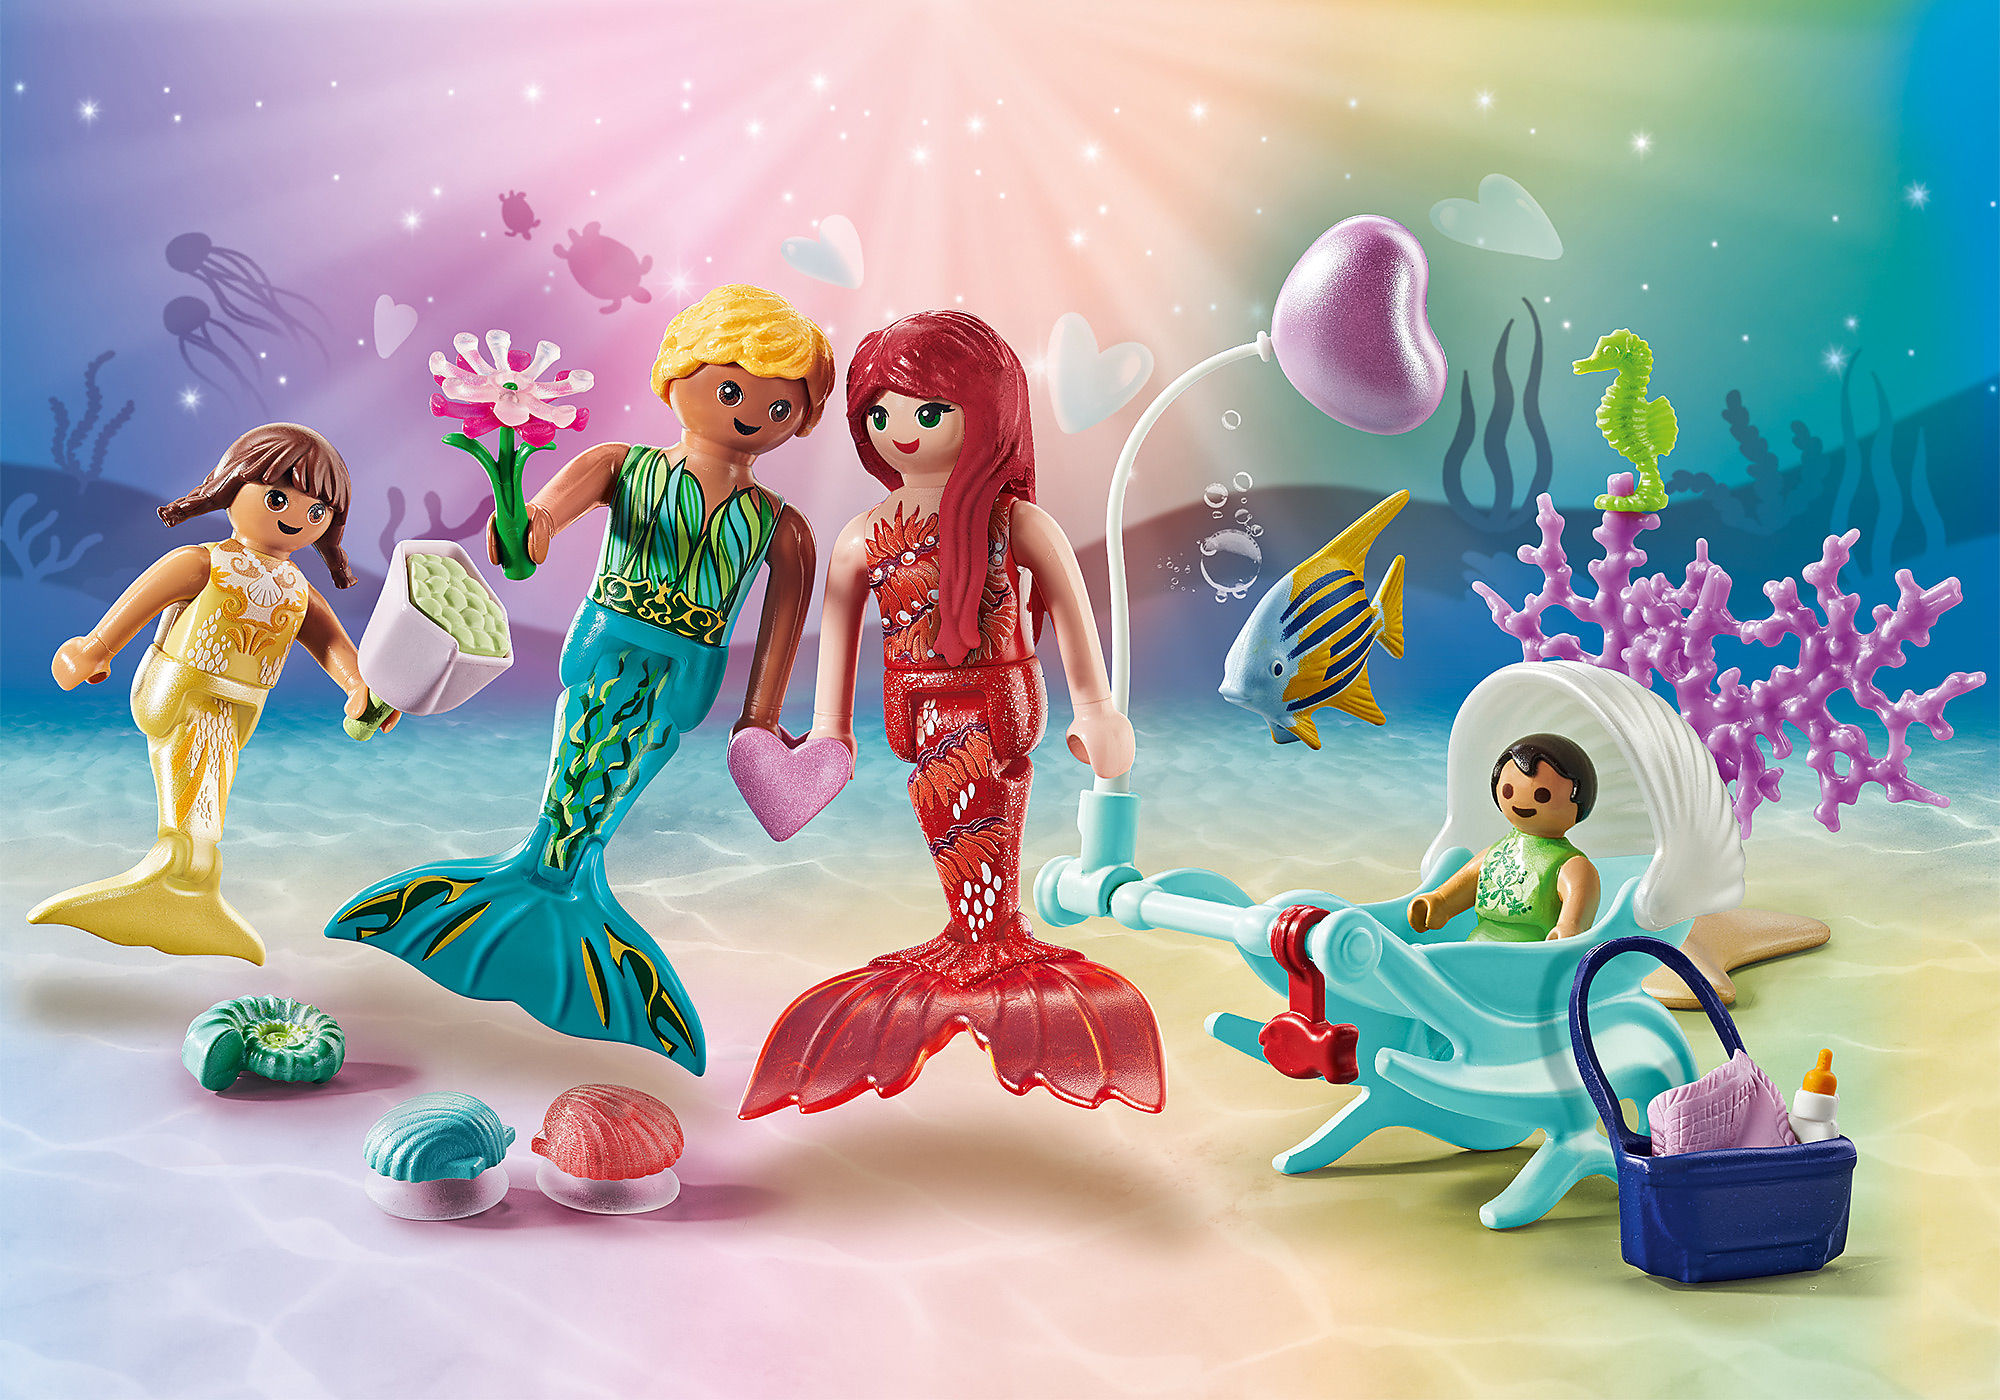 Bienvenue dans le monde enchanté des Princesses Playmobil